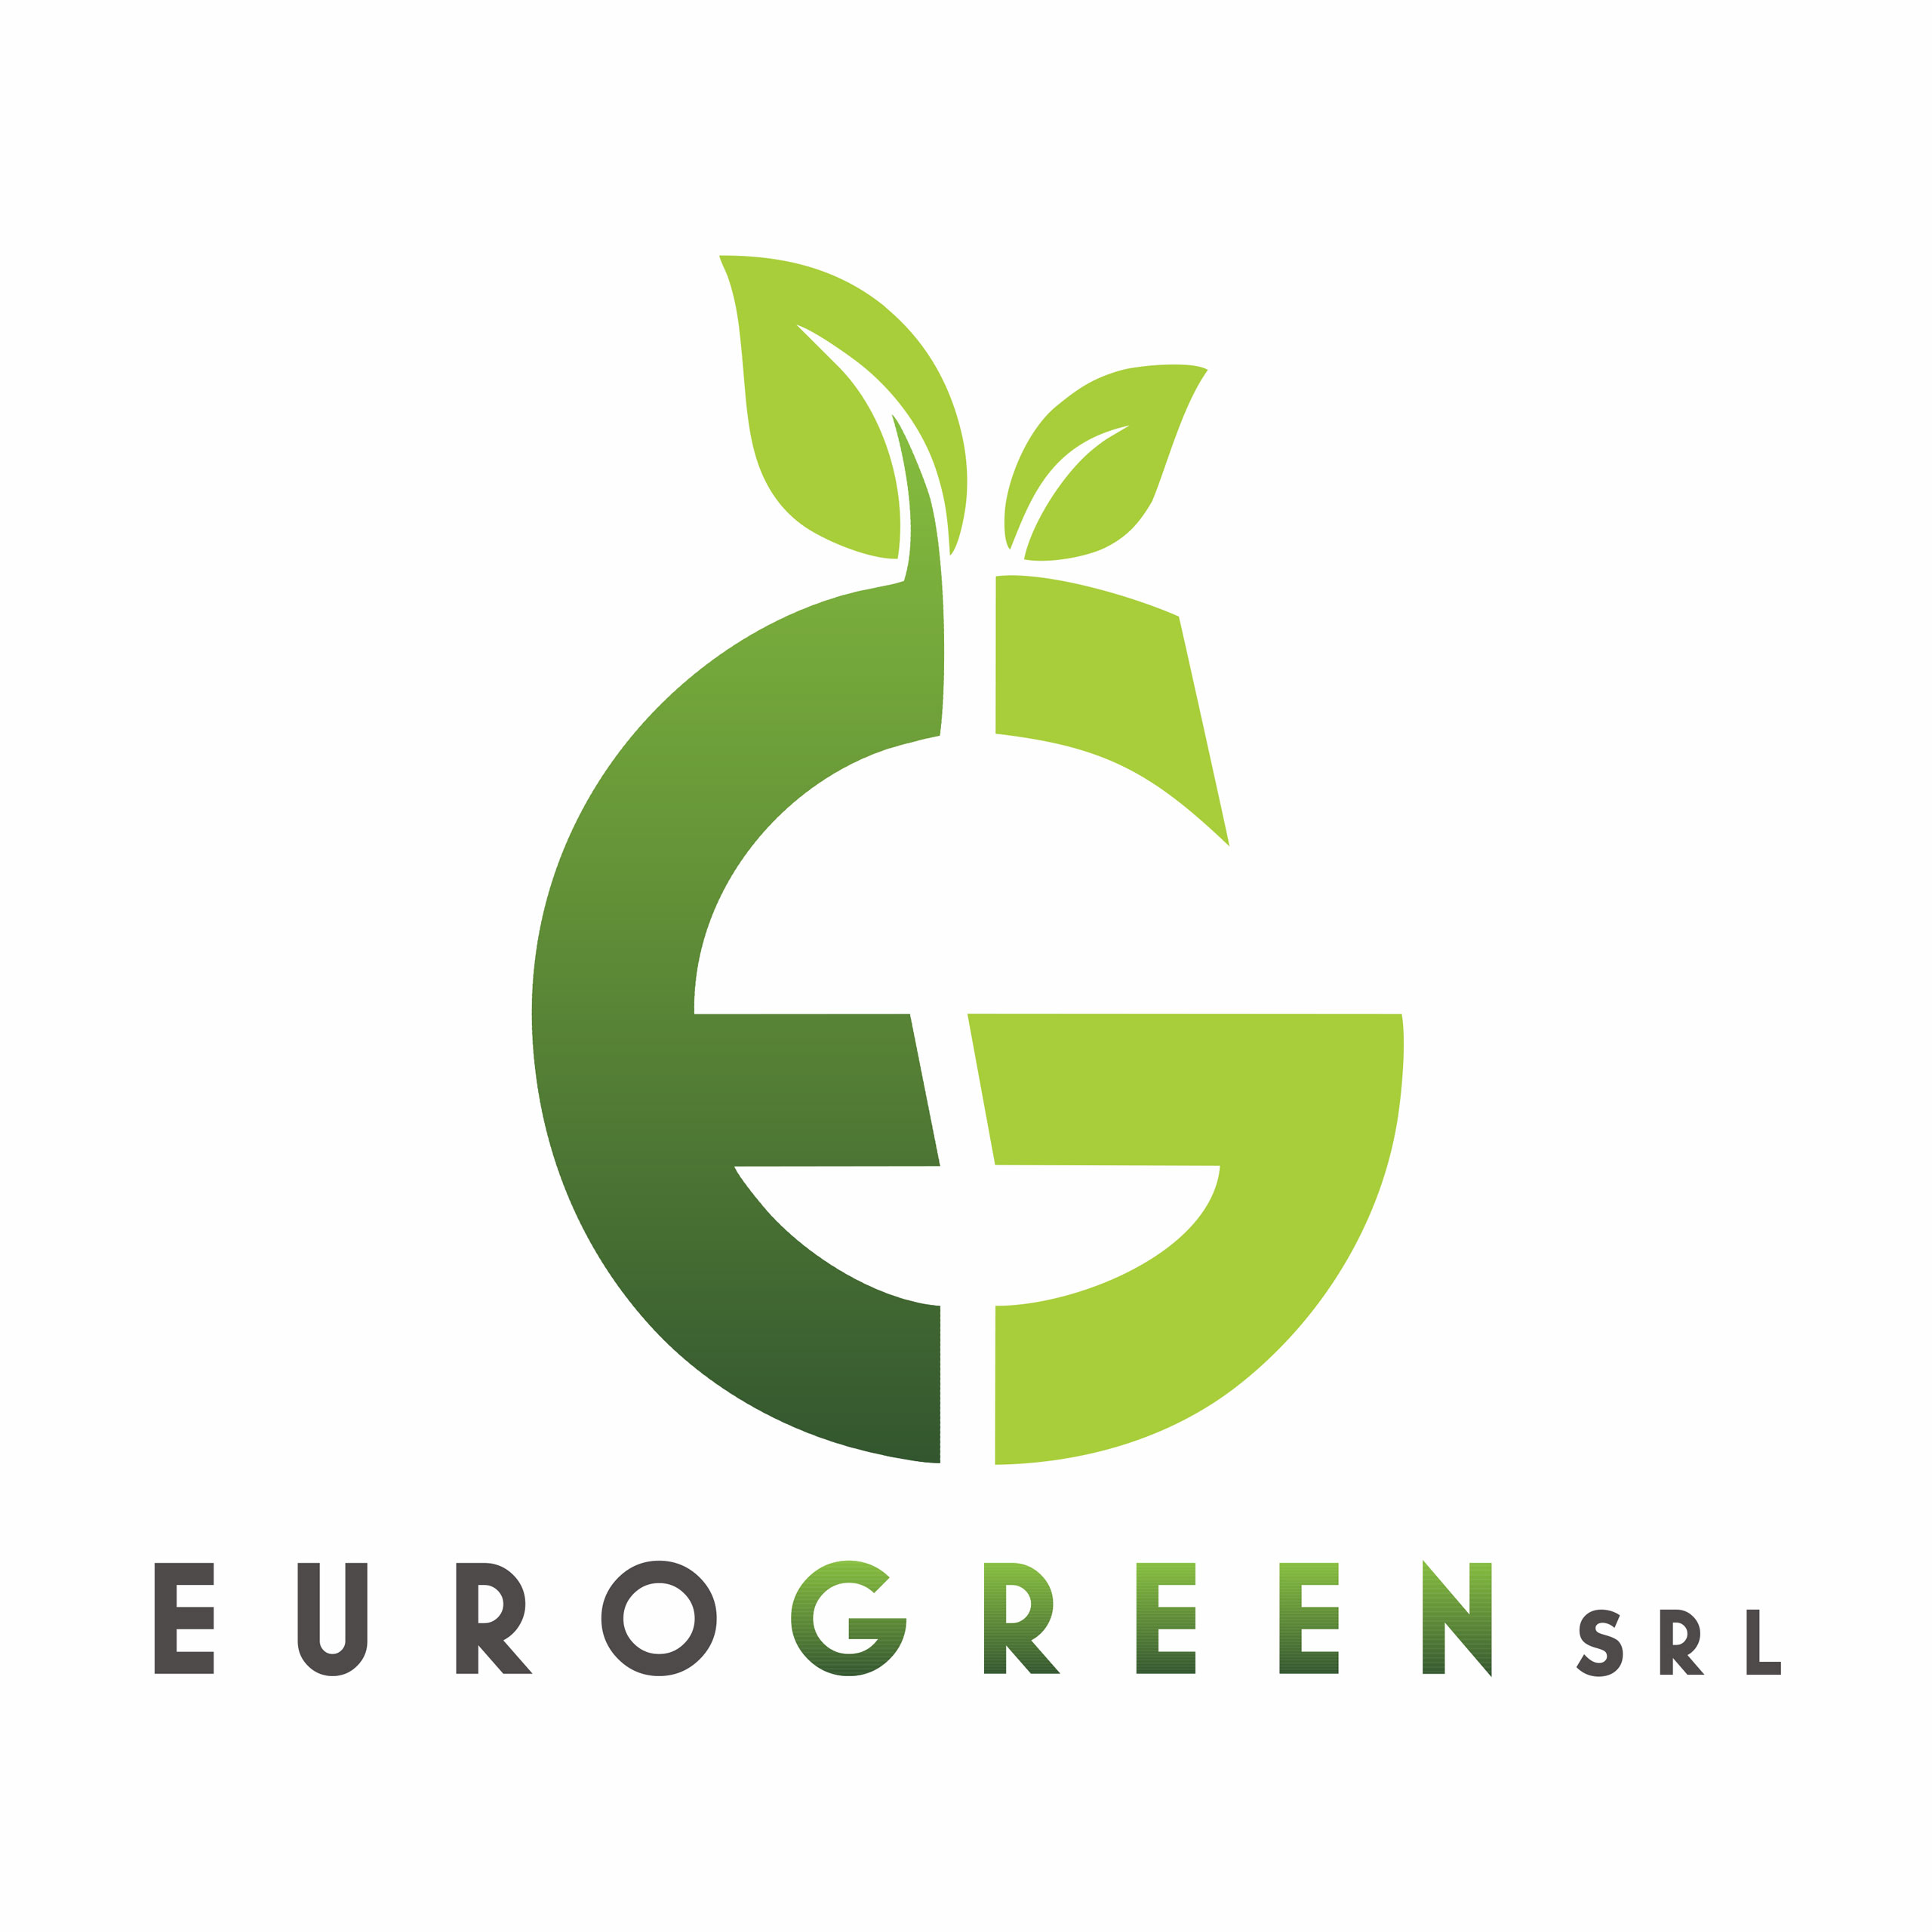 Eurogreen Srl - Elaborazione logo in vettoriale